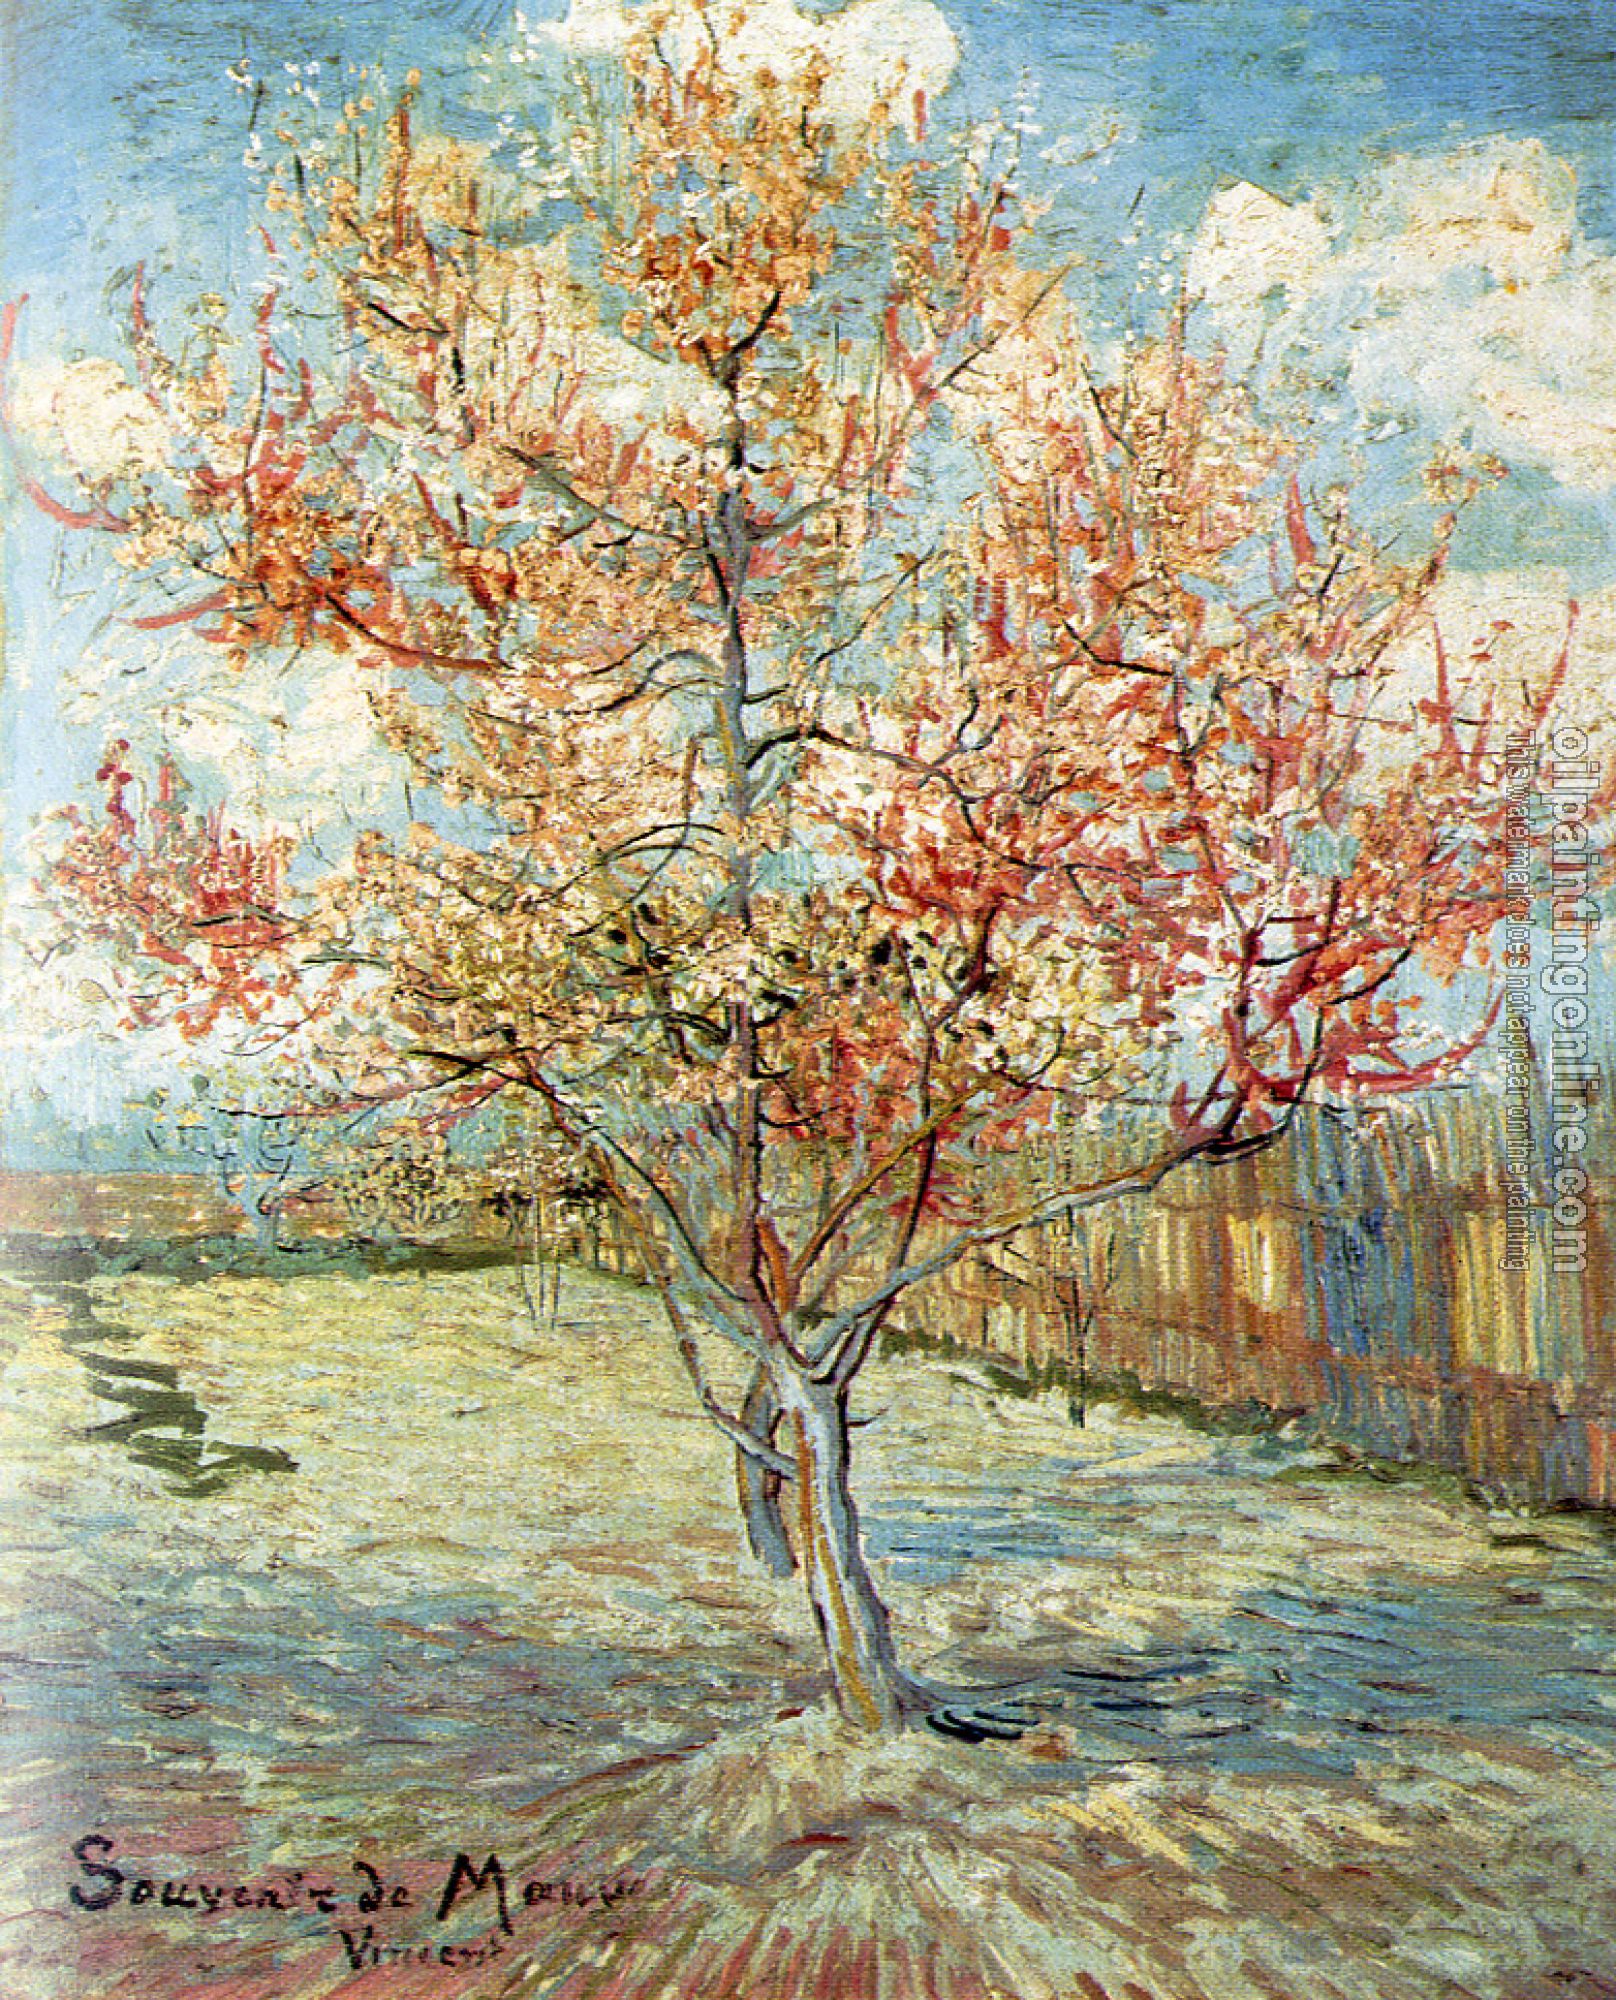 Gogh, Vincent van - Pink Peach Tress